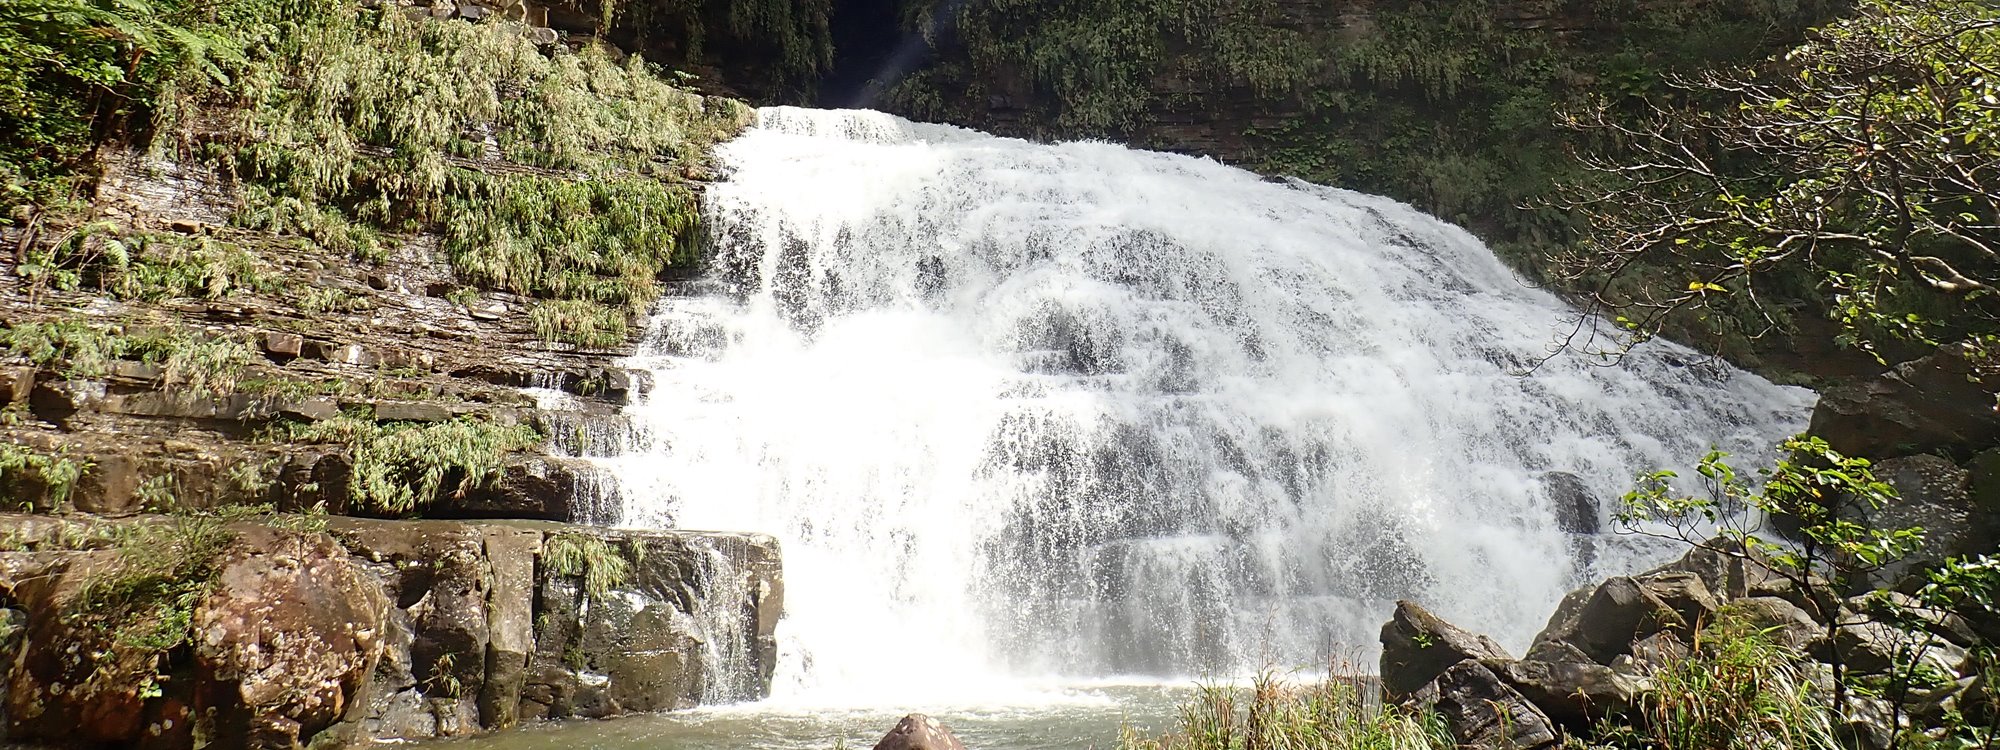 イリオモテヤマネコの城へ マヤグスクの滝トレッキング 仲良川観光 西表島大自然ツアー開催